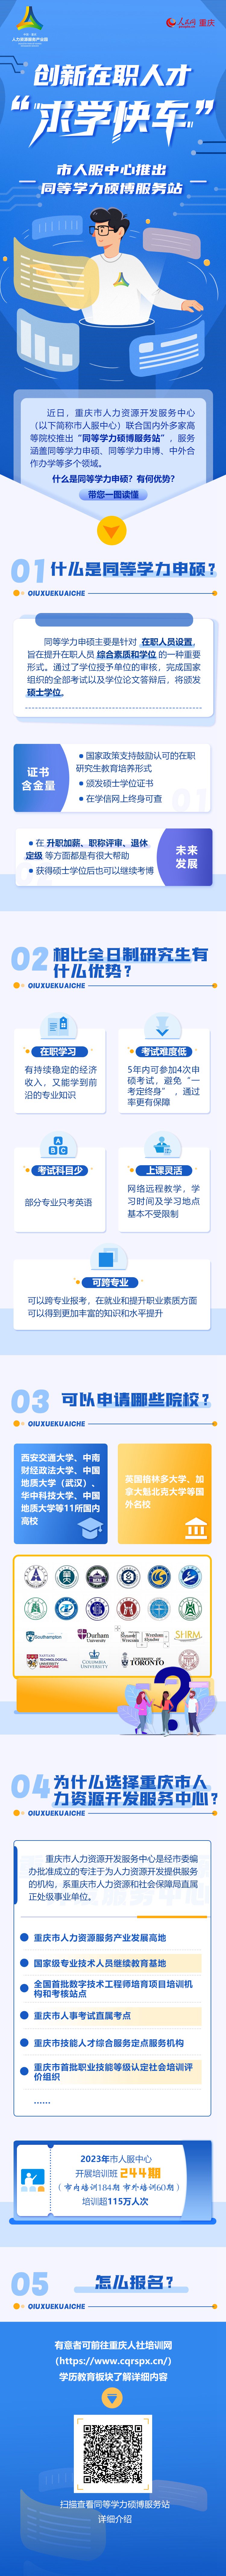 重庆市人服中心推出同等学力硕博服务站